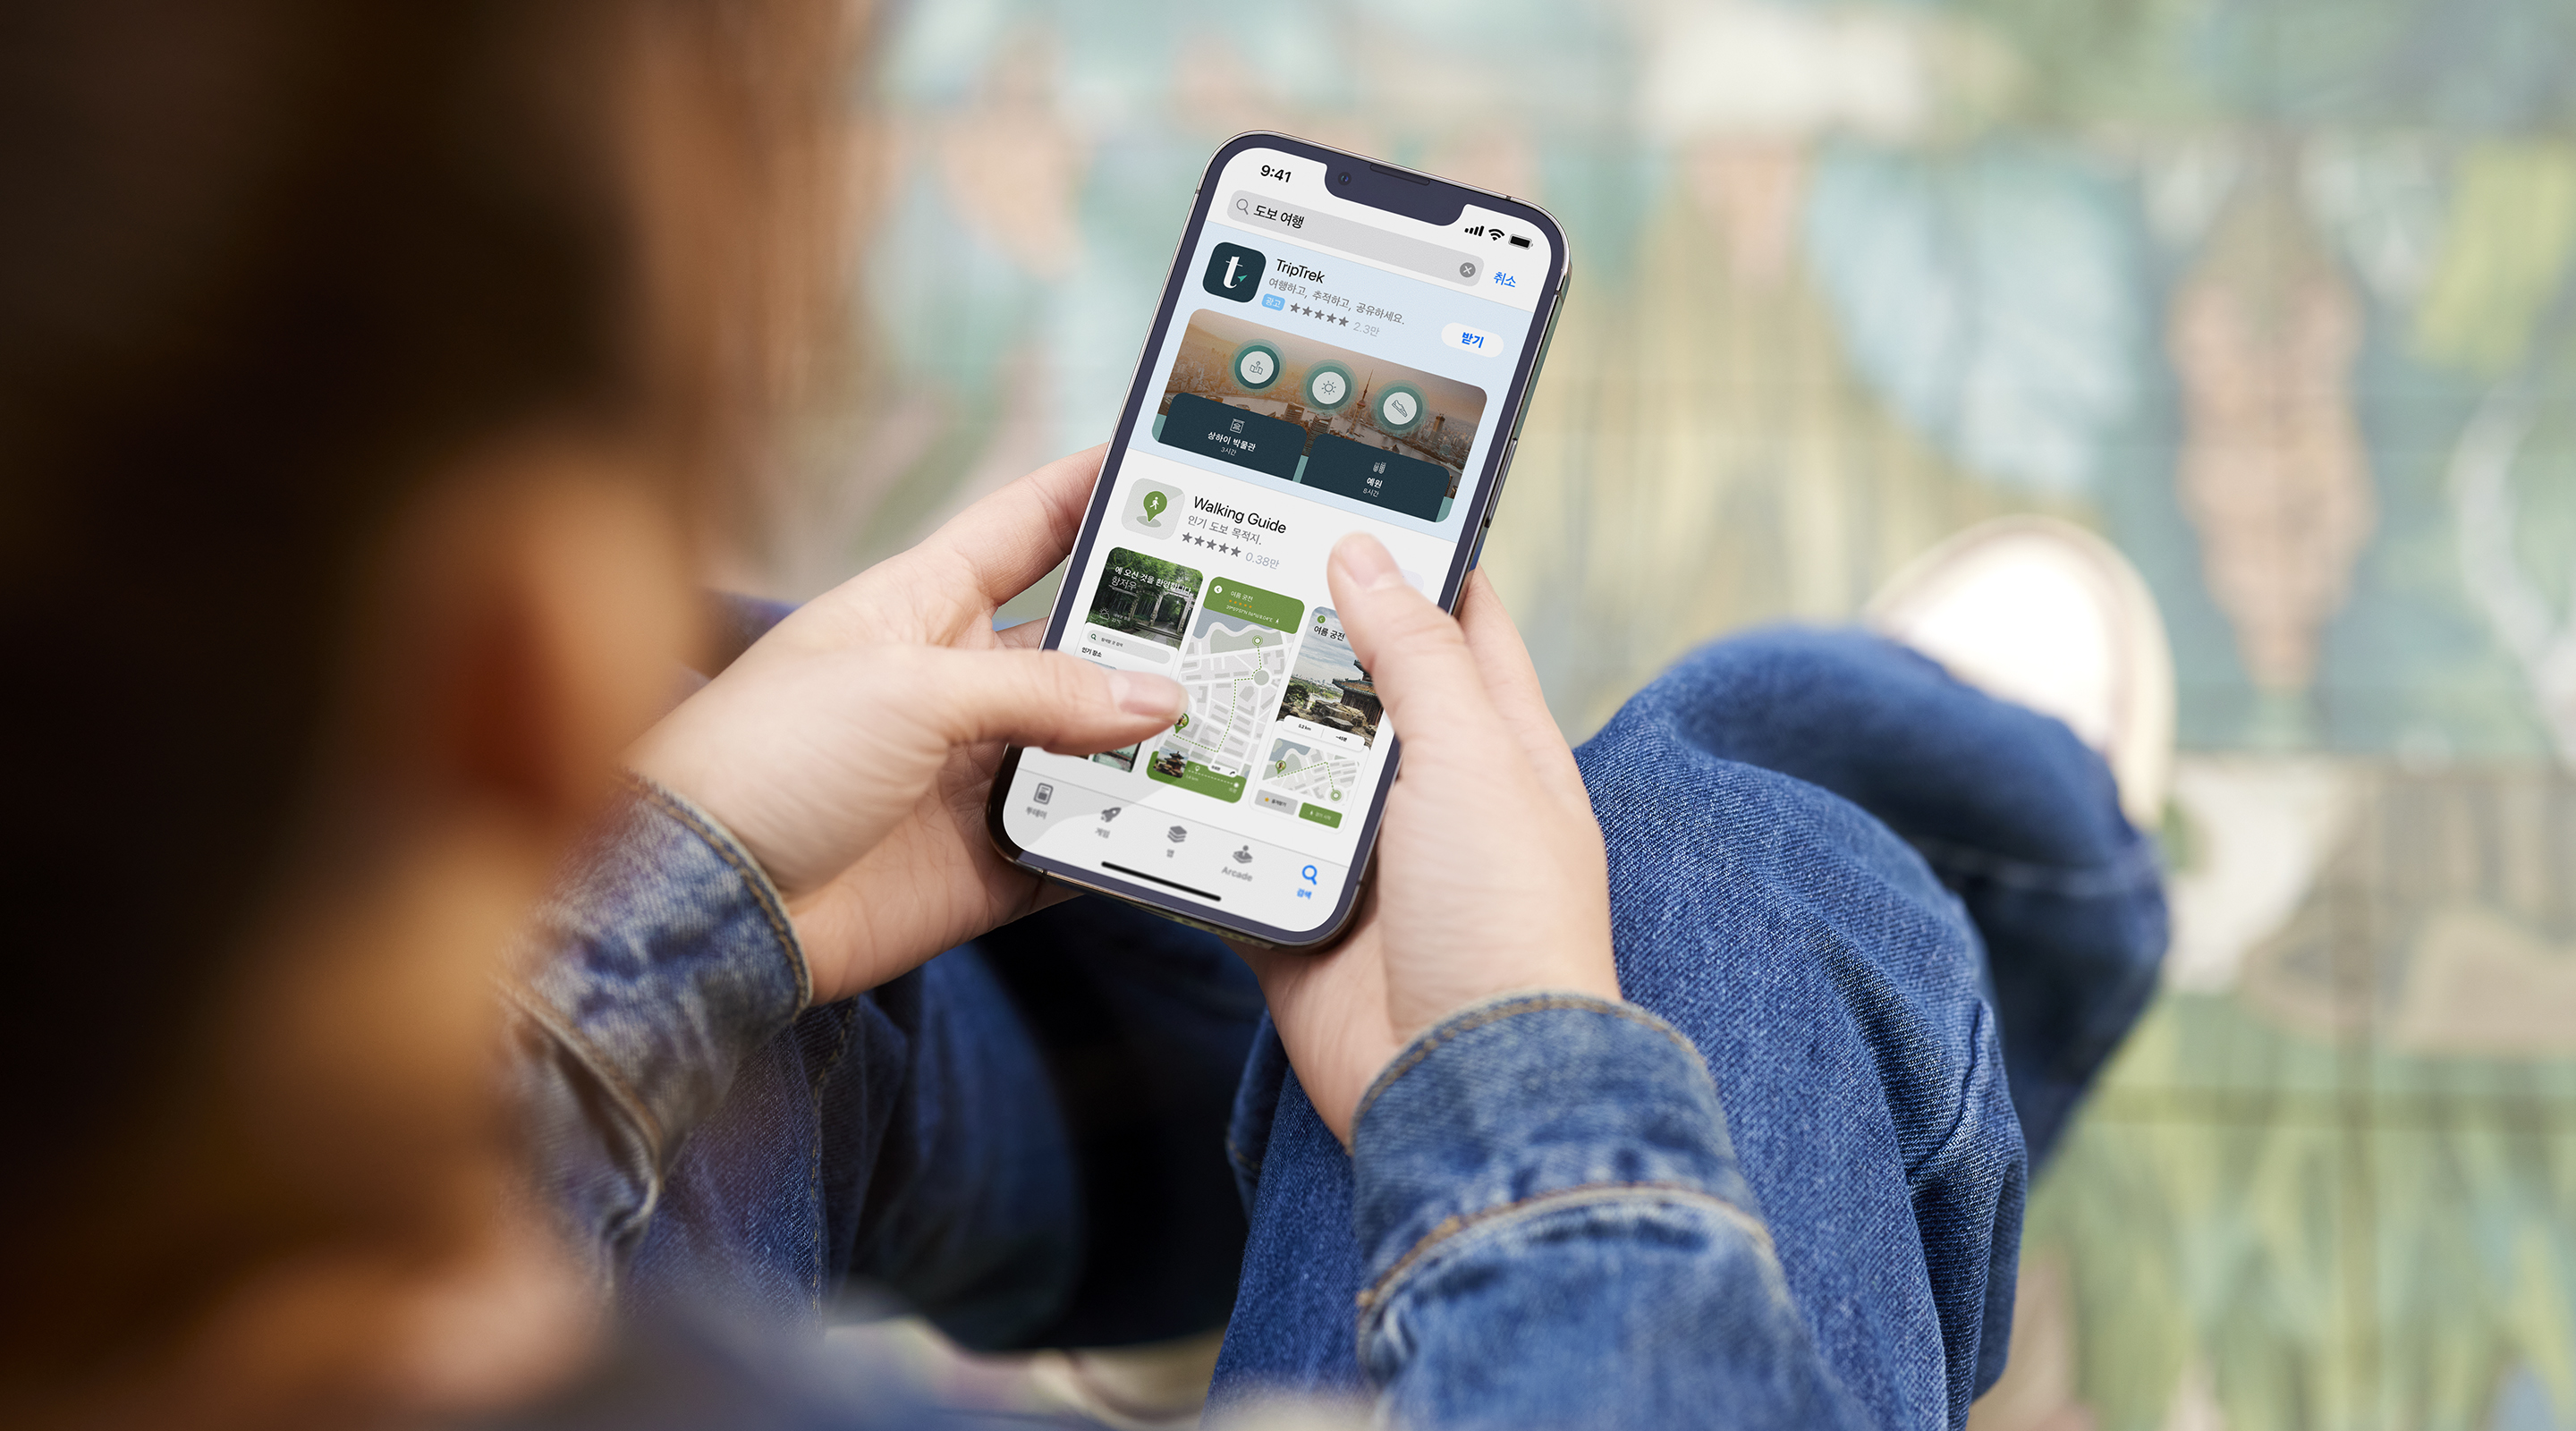 양손으로 iPhone을 들고 있습니다. App Store에 예제 앱 TripTrek의 검색 결과 광고가 열려 있고 검색 상자에 검색어 ‘걷기 여행’이 입력되어 있습니다. 